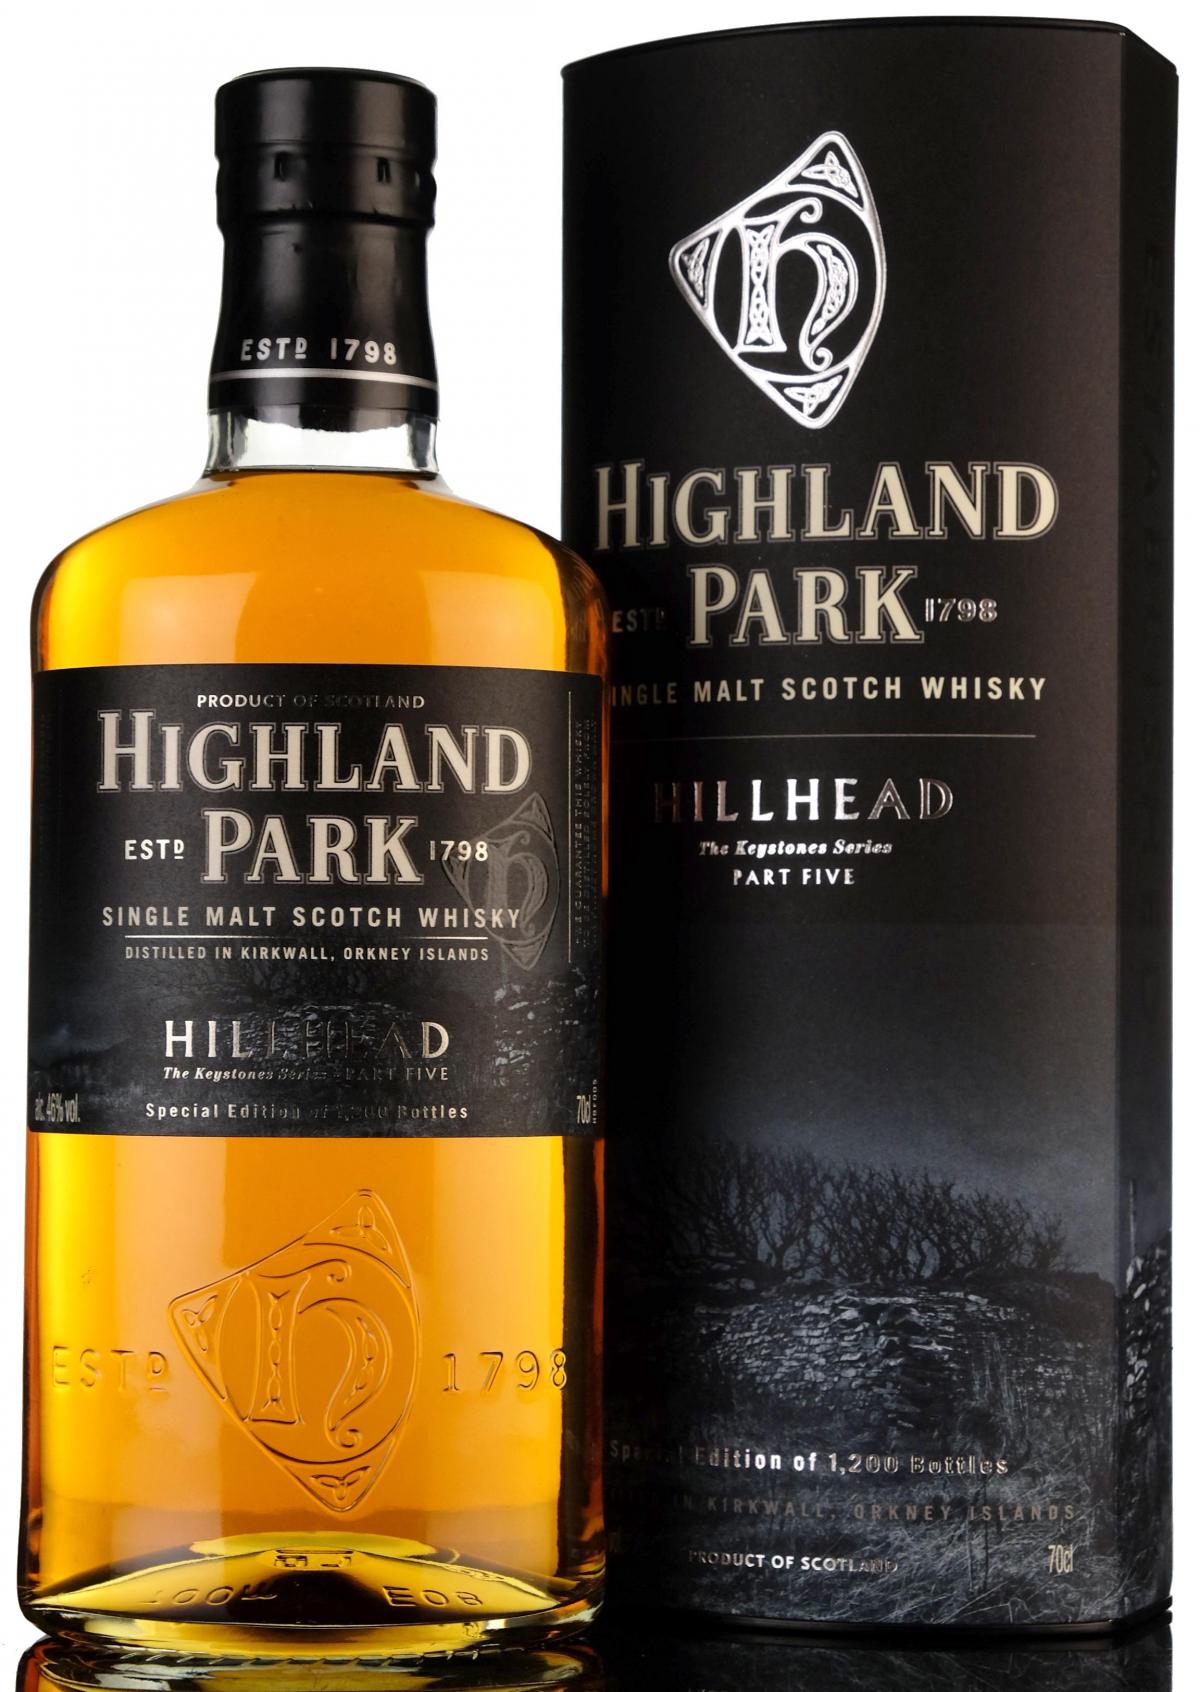 Highland Park Hillhead - Keystones Series Part Five